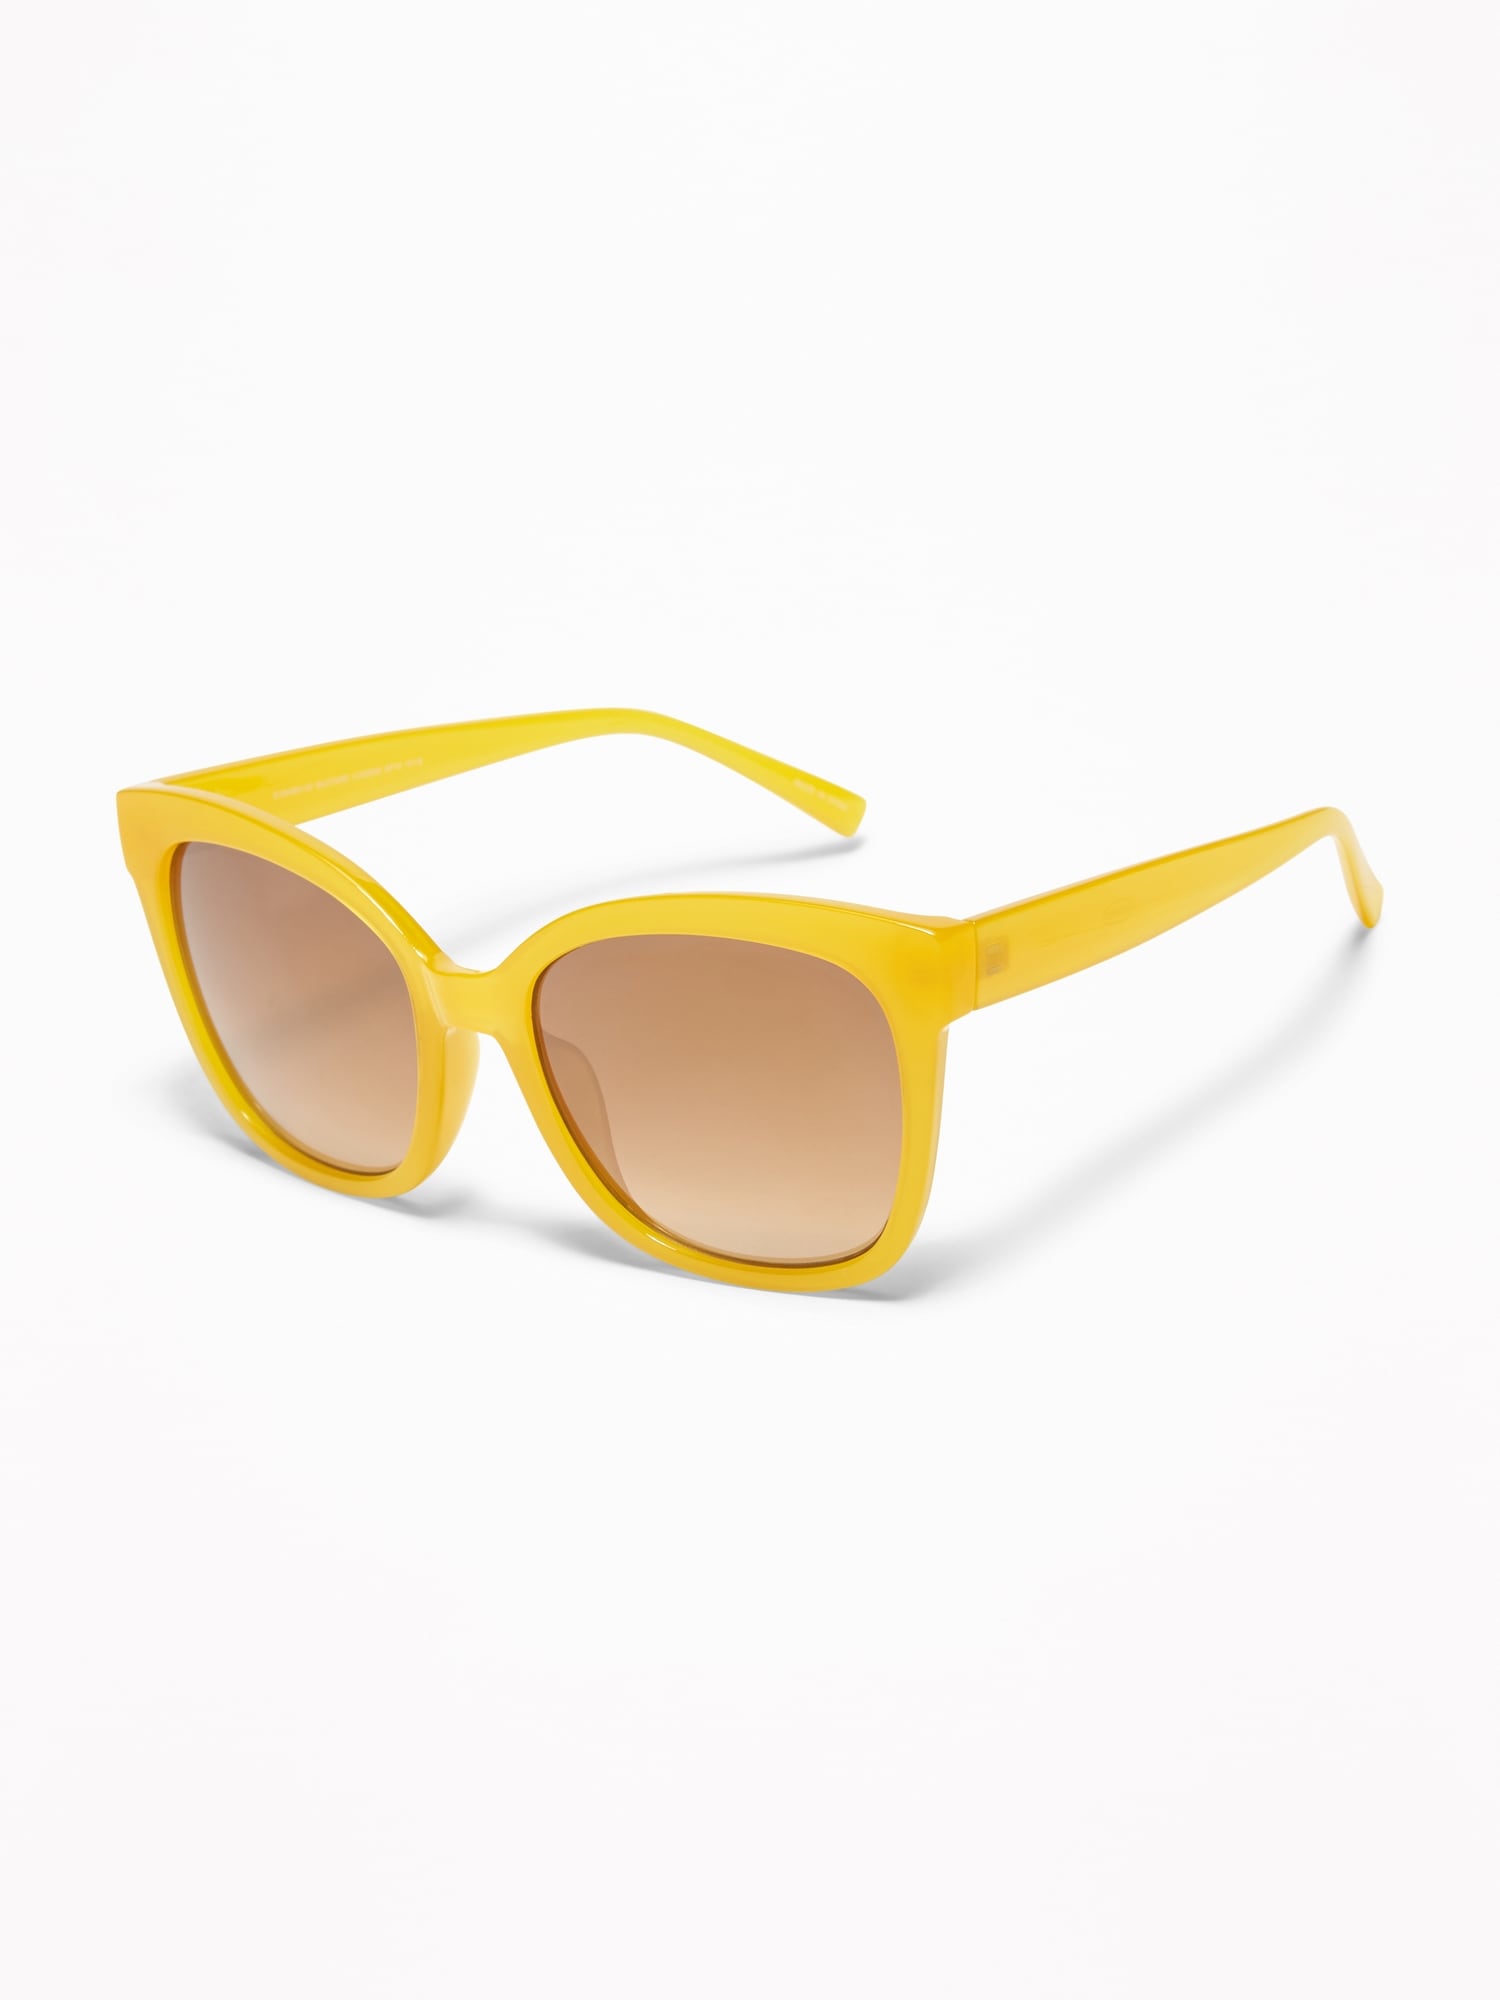 Old Navy Sunglasses for Women | eBay